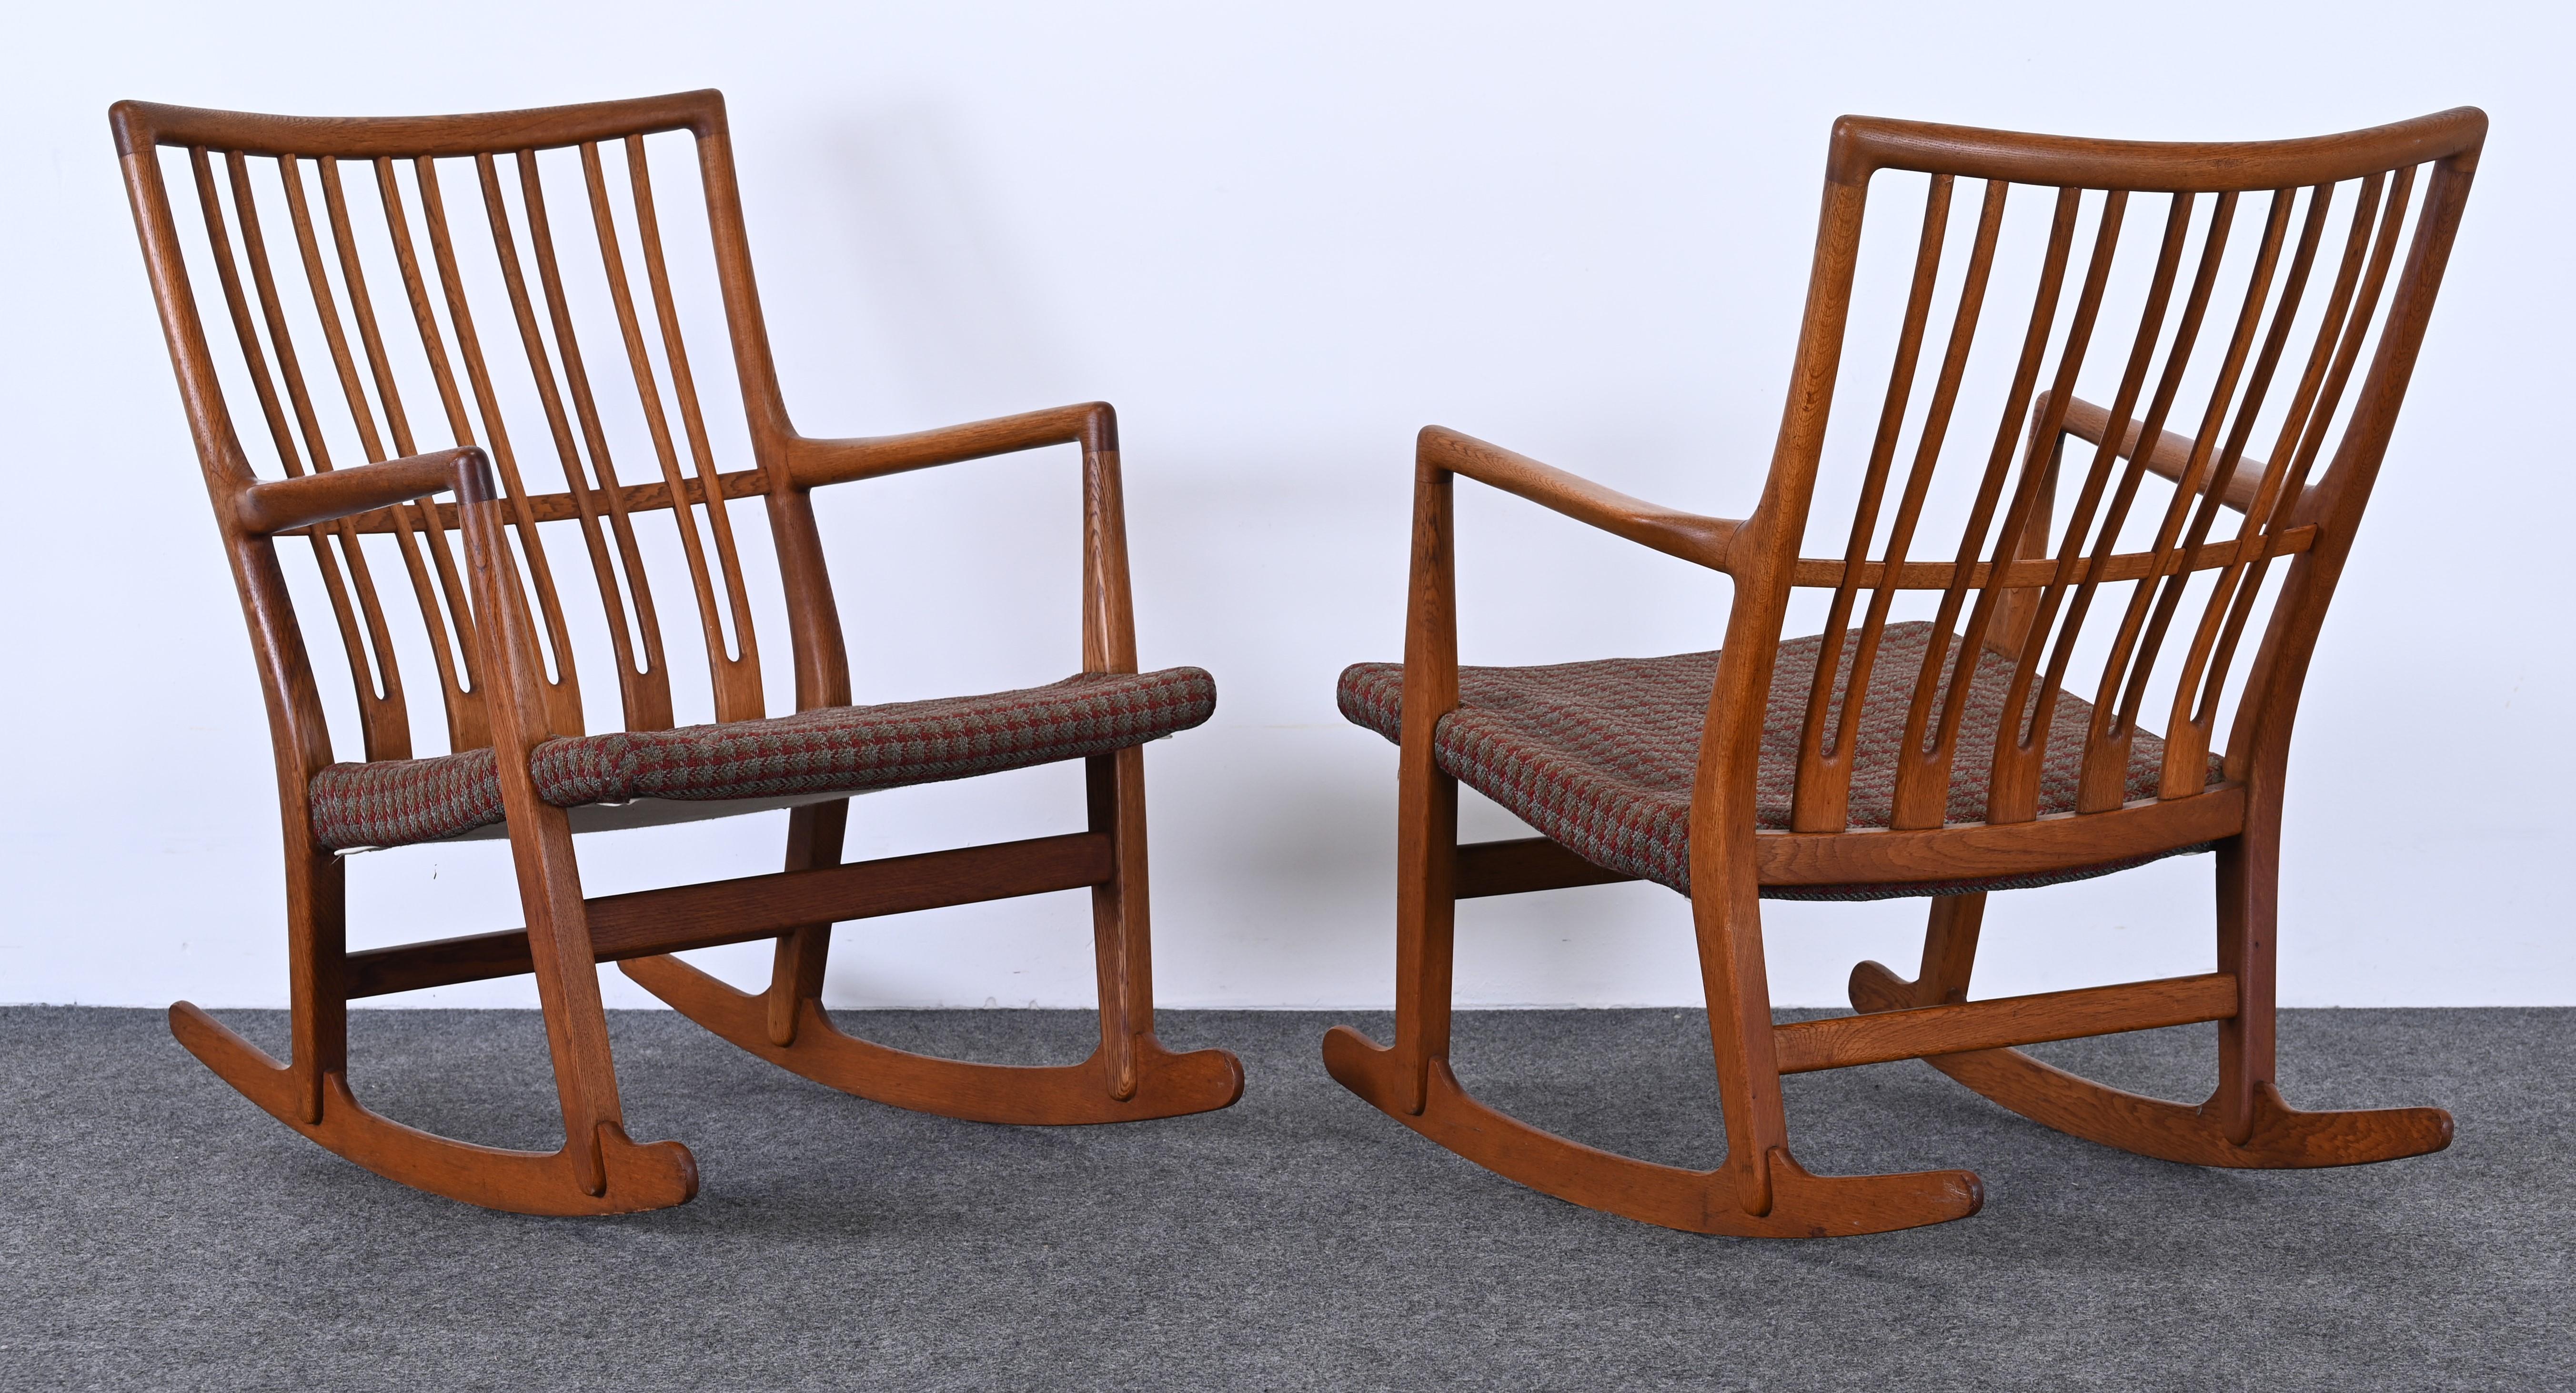 Ein klassischer Hans Wegner ML-33 Schaukelstuhl aus Teakholz. Hergestellt für Michael Laursen in den 1940er Jahren. Der Stuhl hat einen stilisierten Holzrahmen mit vertikalen Latten. Die Polsterung ist Vintage und muss aktualisiert werden. Der Stuhl